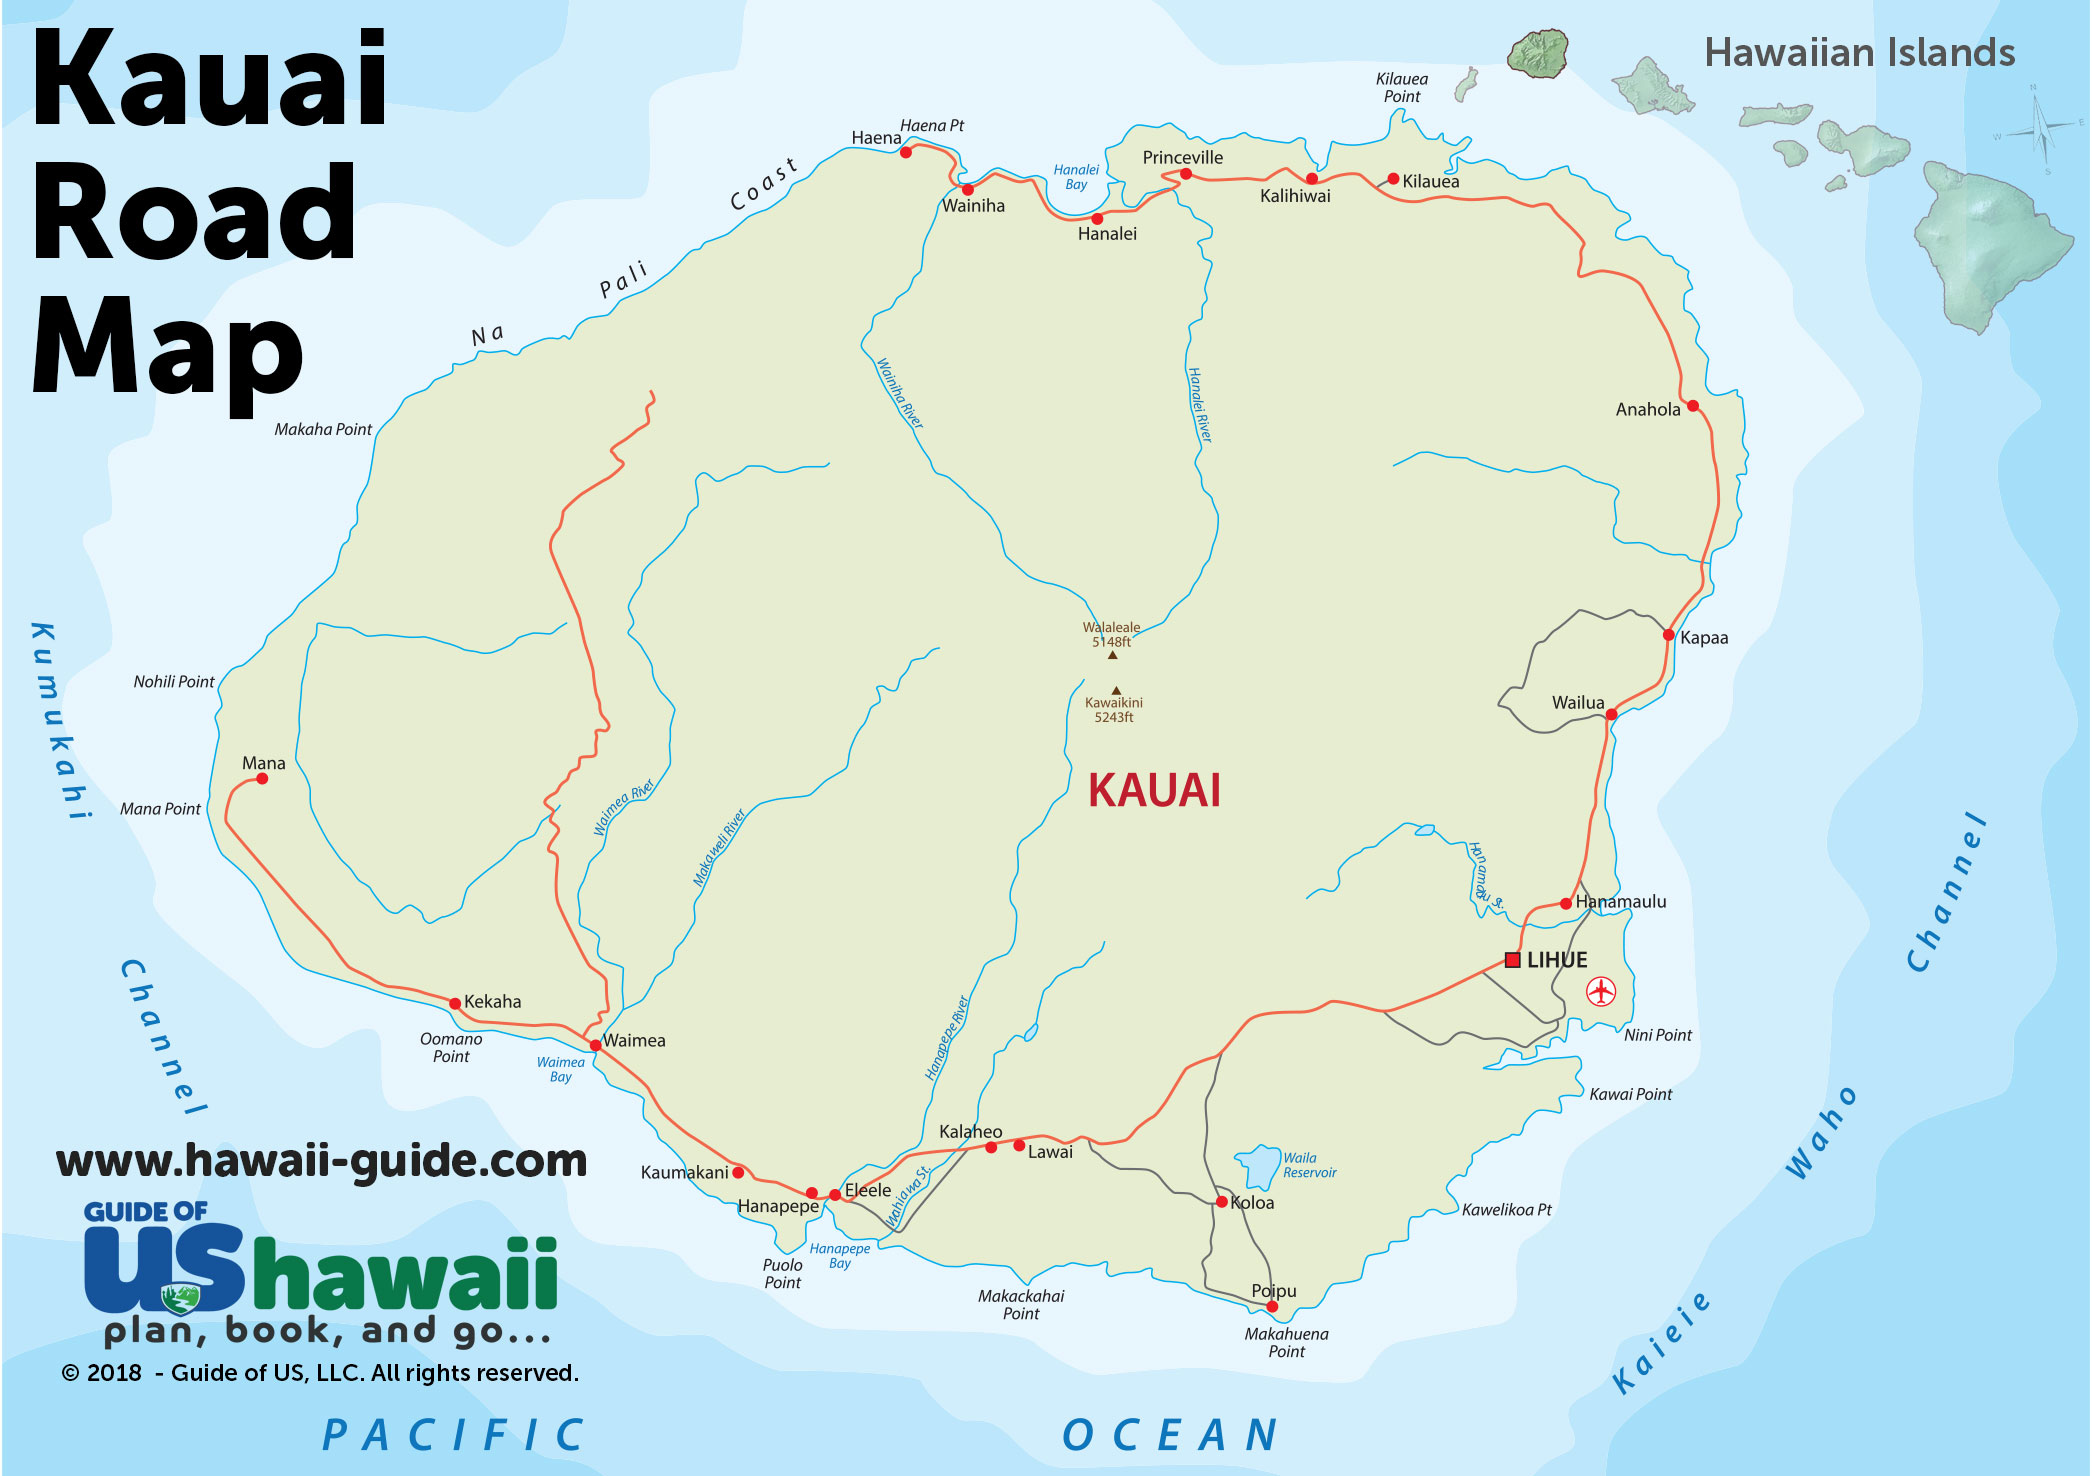 Kauai Hawaii Maps Travel Road Map Of Kauai